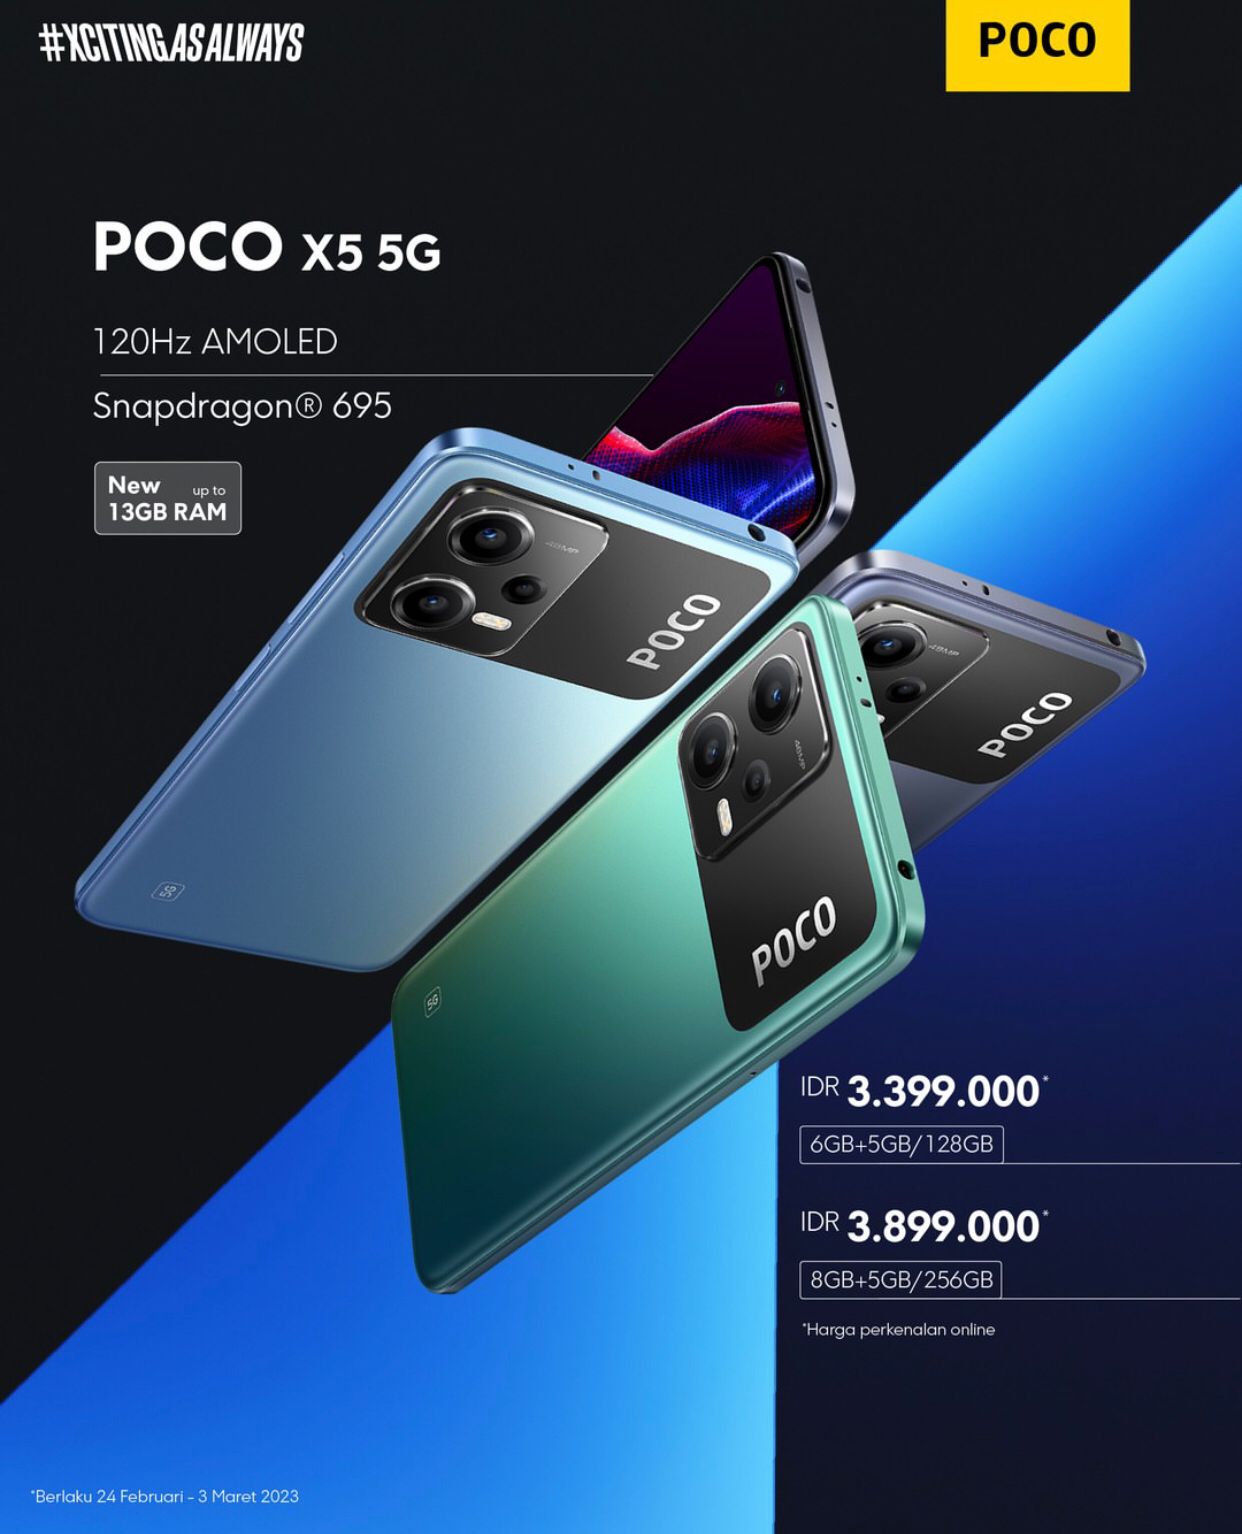 Canggih! Smartphone POCO X5 5G Hadir Dengan Fitur Asik